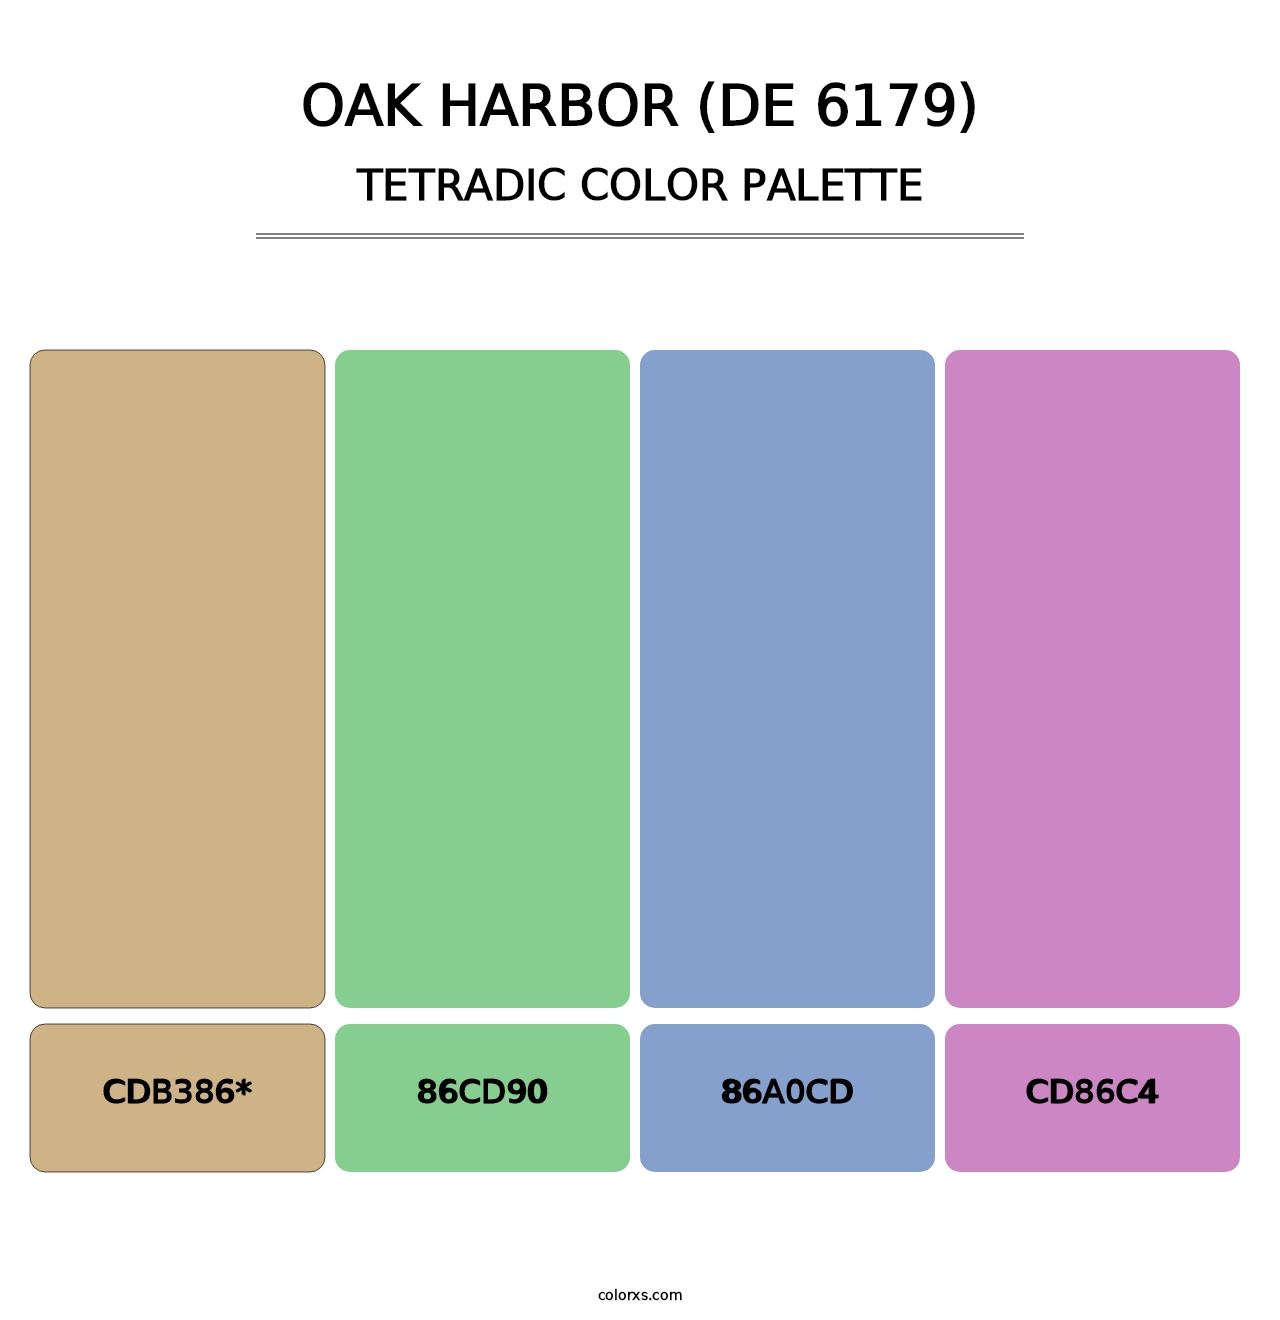 Oak Harbor (DE 6179) - Tetradic Color Palette